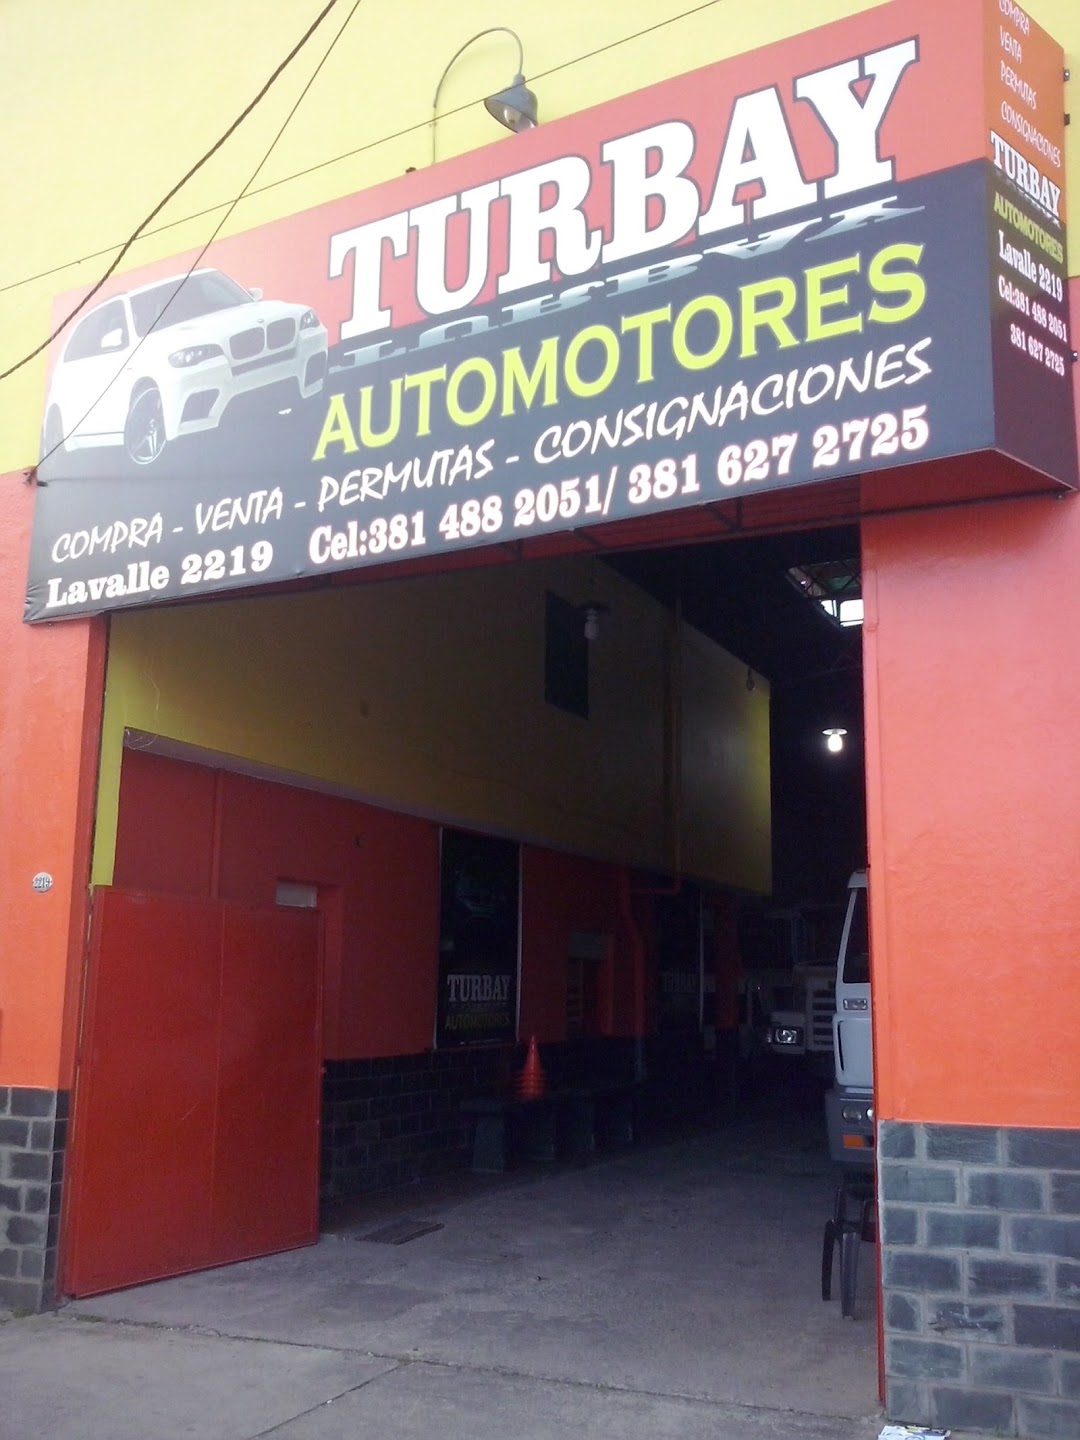 Turbay Automotores